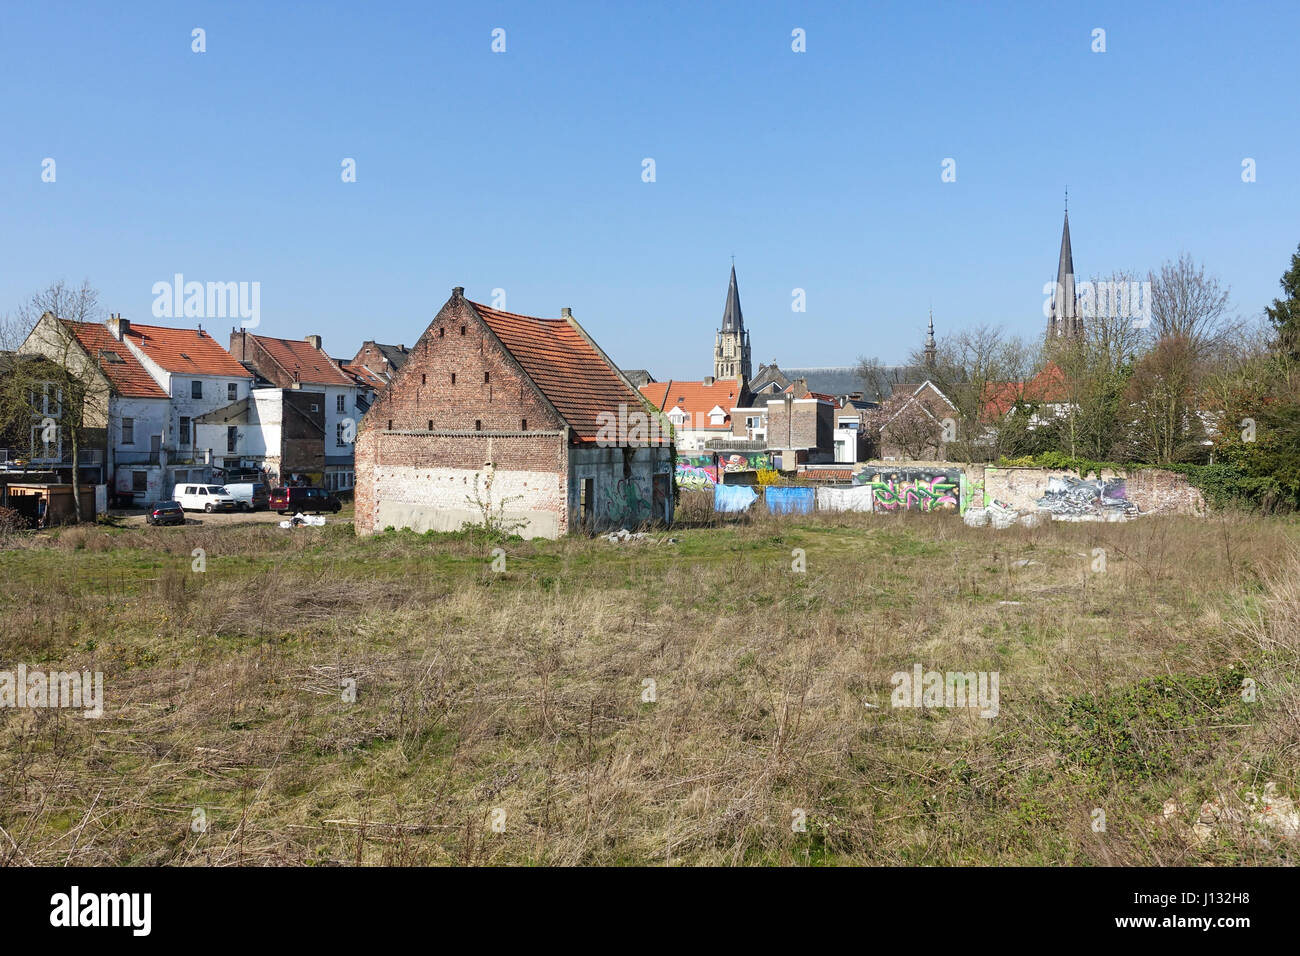 Horizonte de Sittard, ciudad de Sittard desde las paredes, las tierras baldías y la iglesia de San Pedro de Sittard, en la provincia de Limburg, Países Bajos. Foto de stock